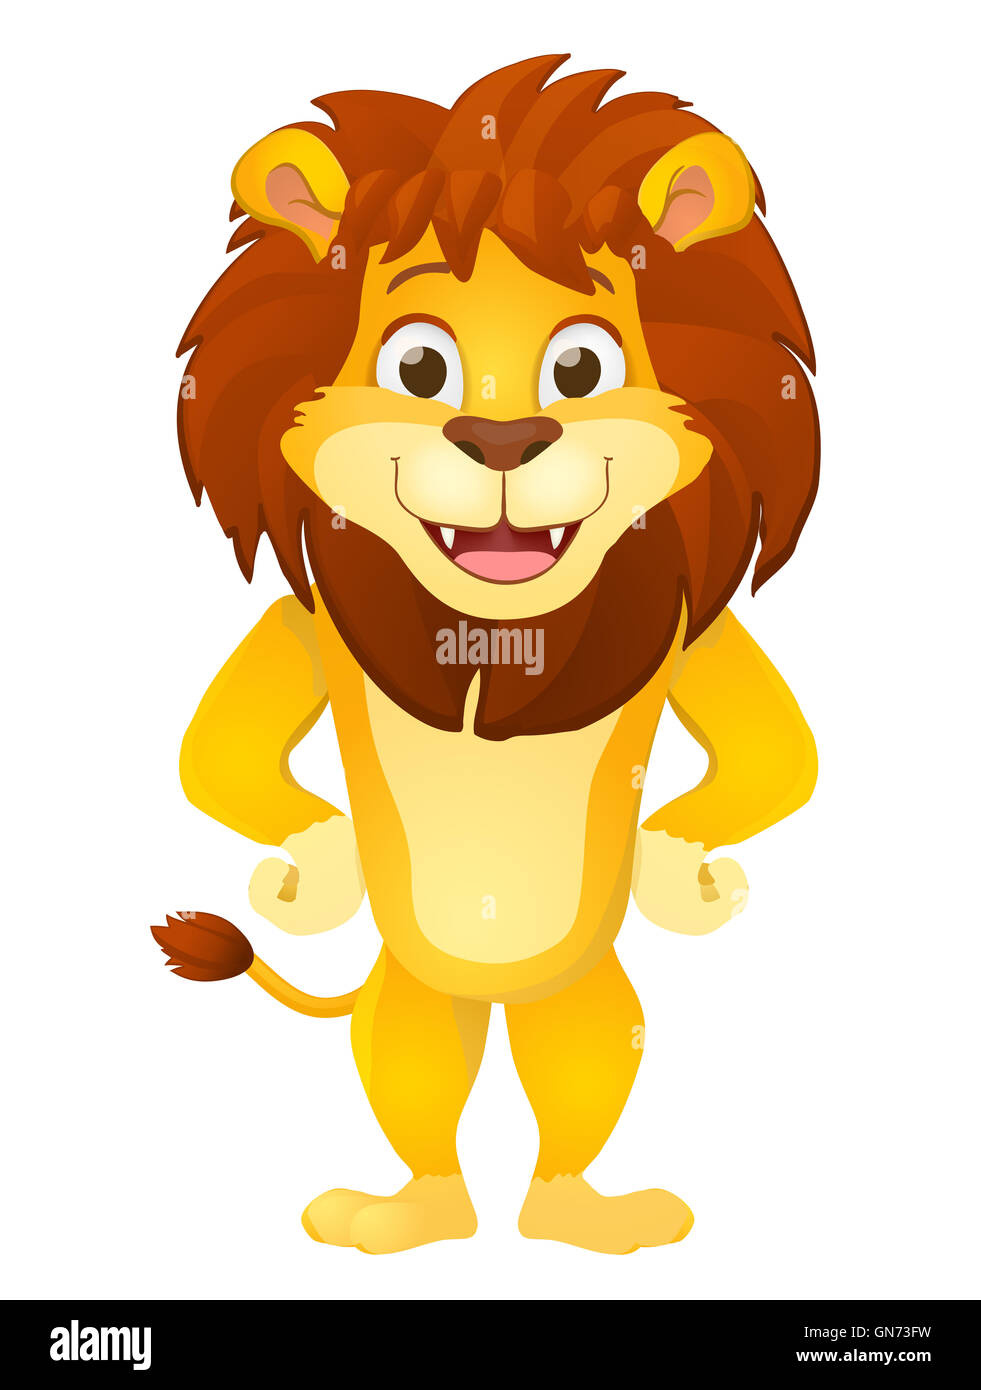 Cartoon lion immagini e fotografie stock ad alta risoluzione - Alamy